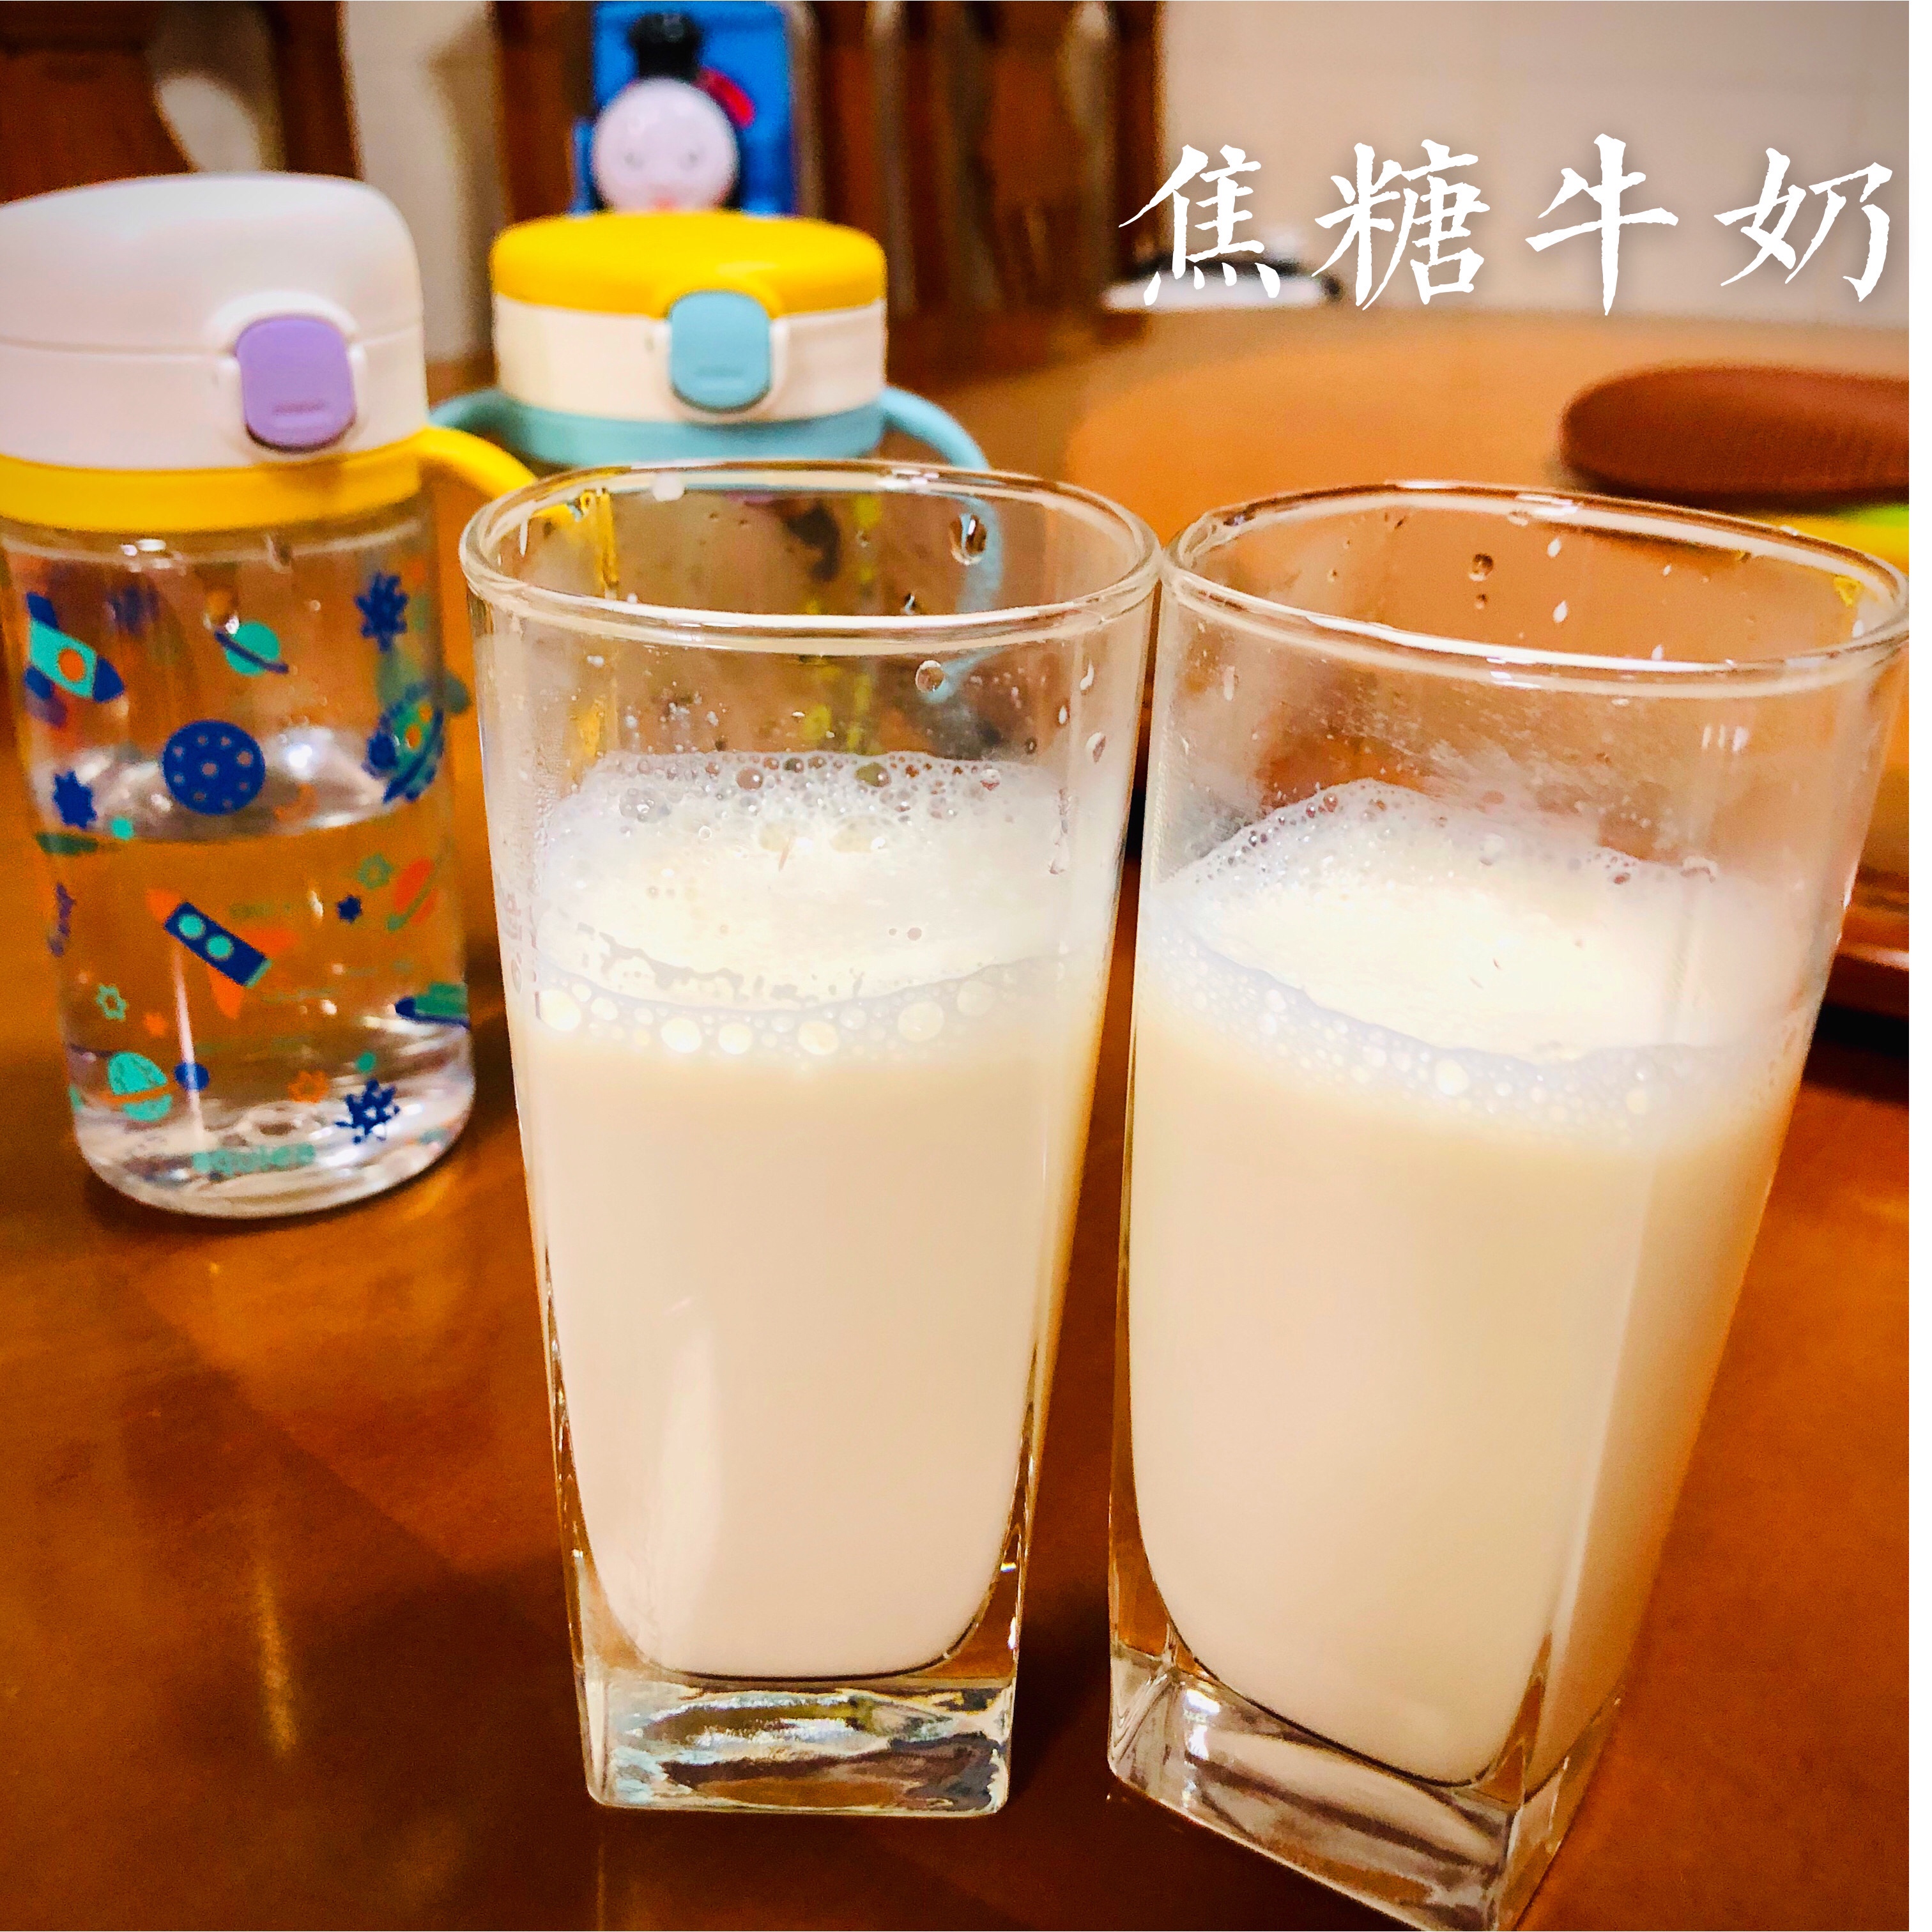 淡淡焦糖香-步骤超简单的焦糖牛奶的做法